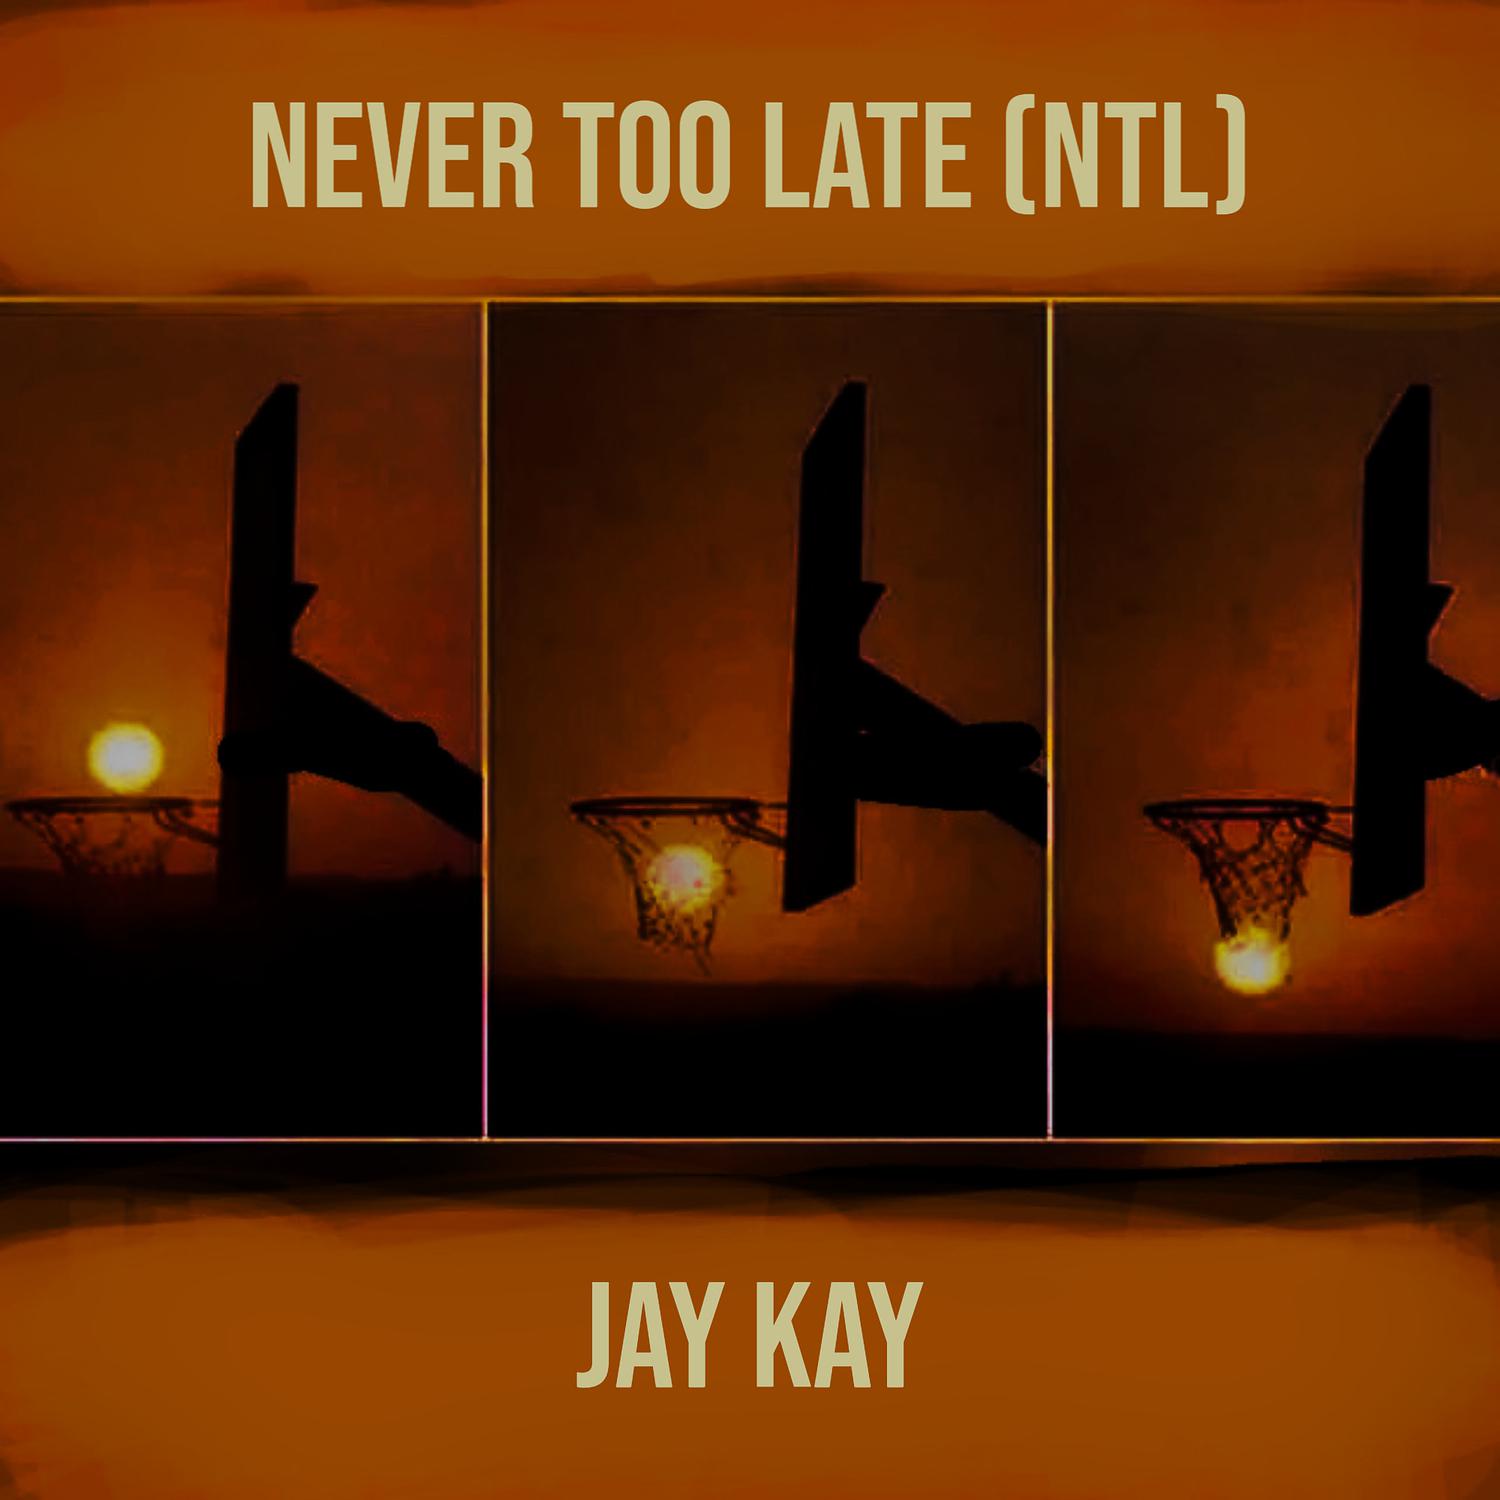 Jay Kay - Fed Up